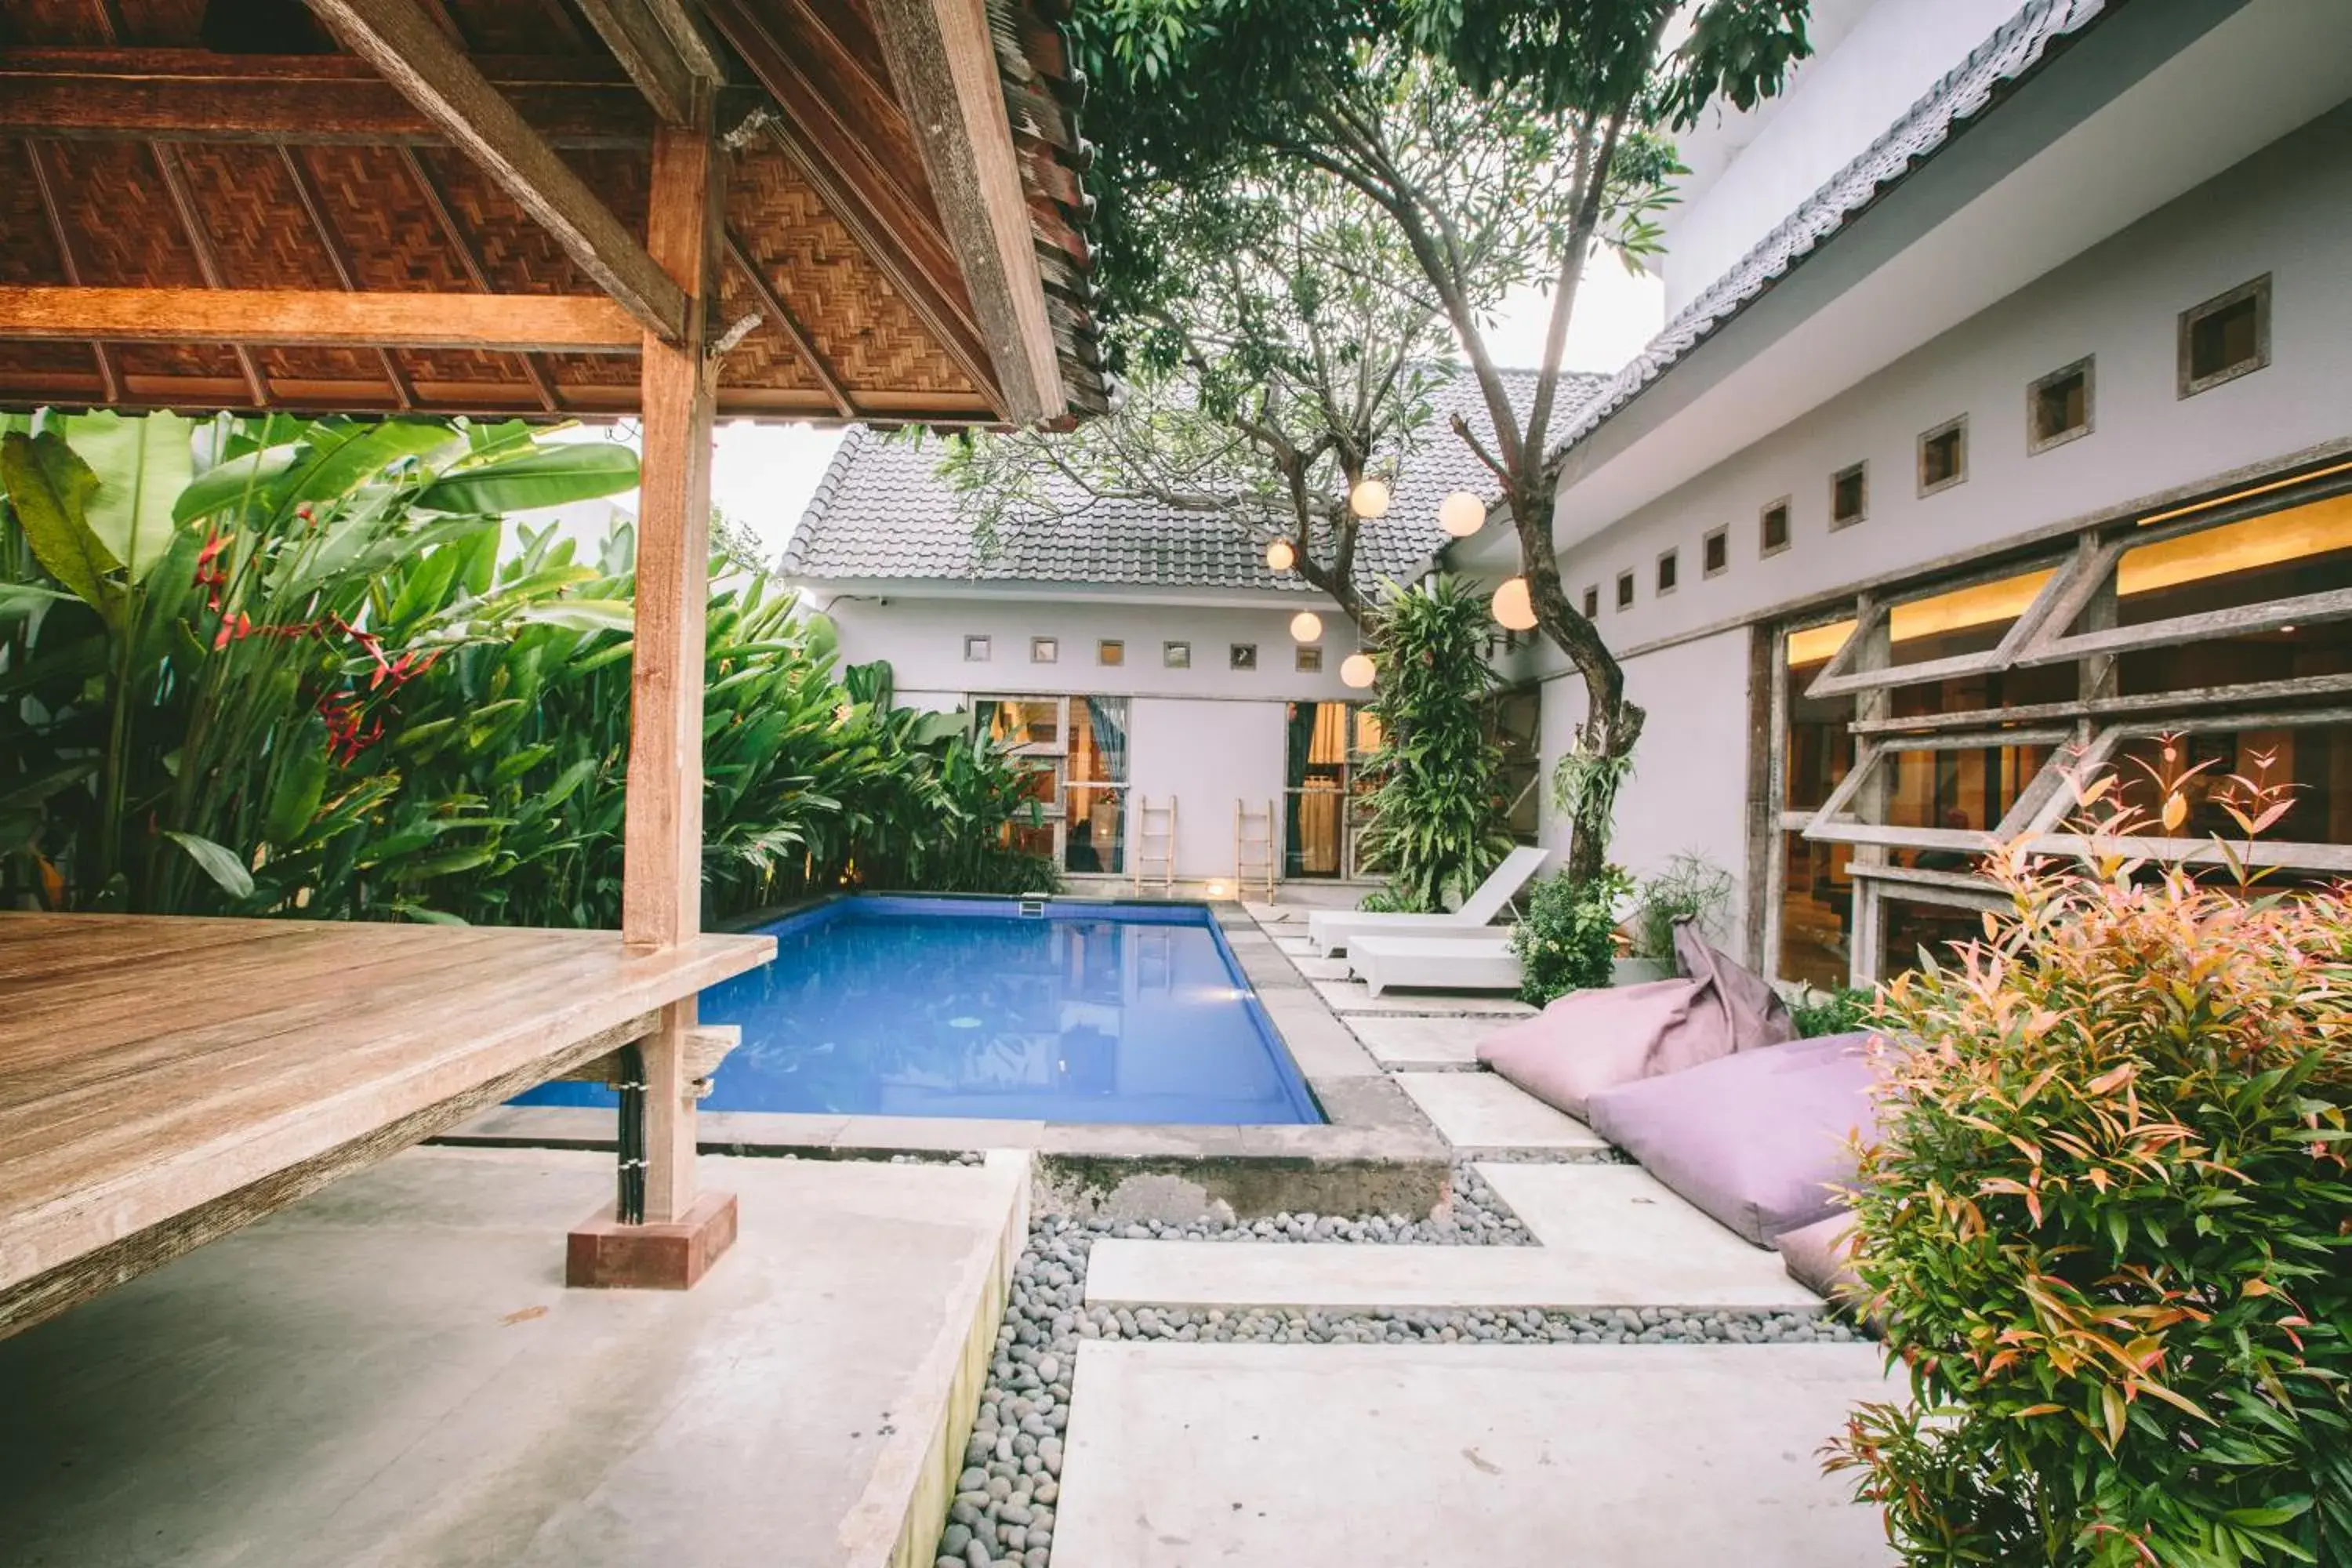 Swimming Pool in Lokal Bali Hostel